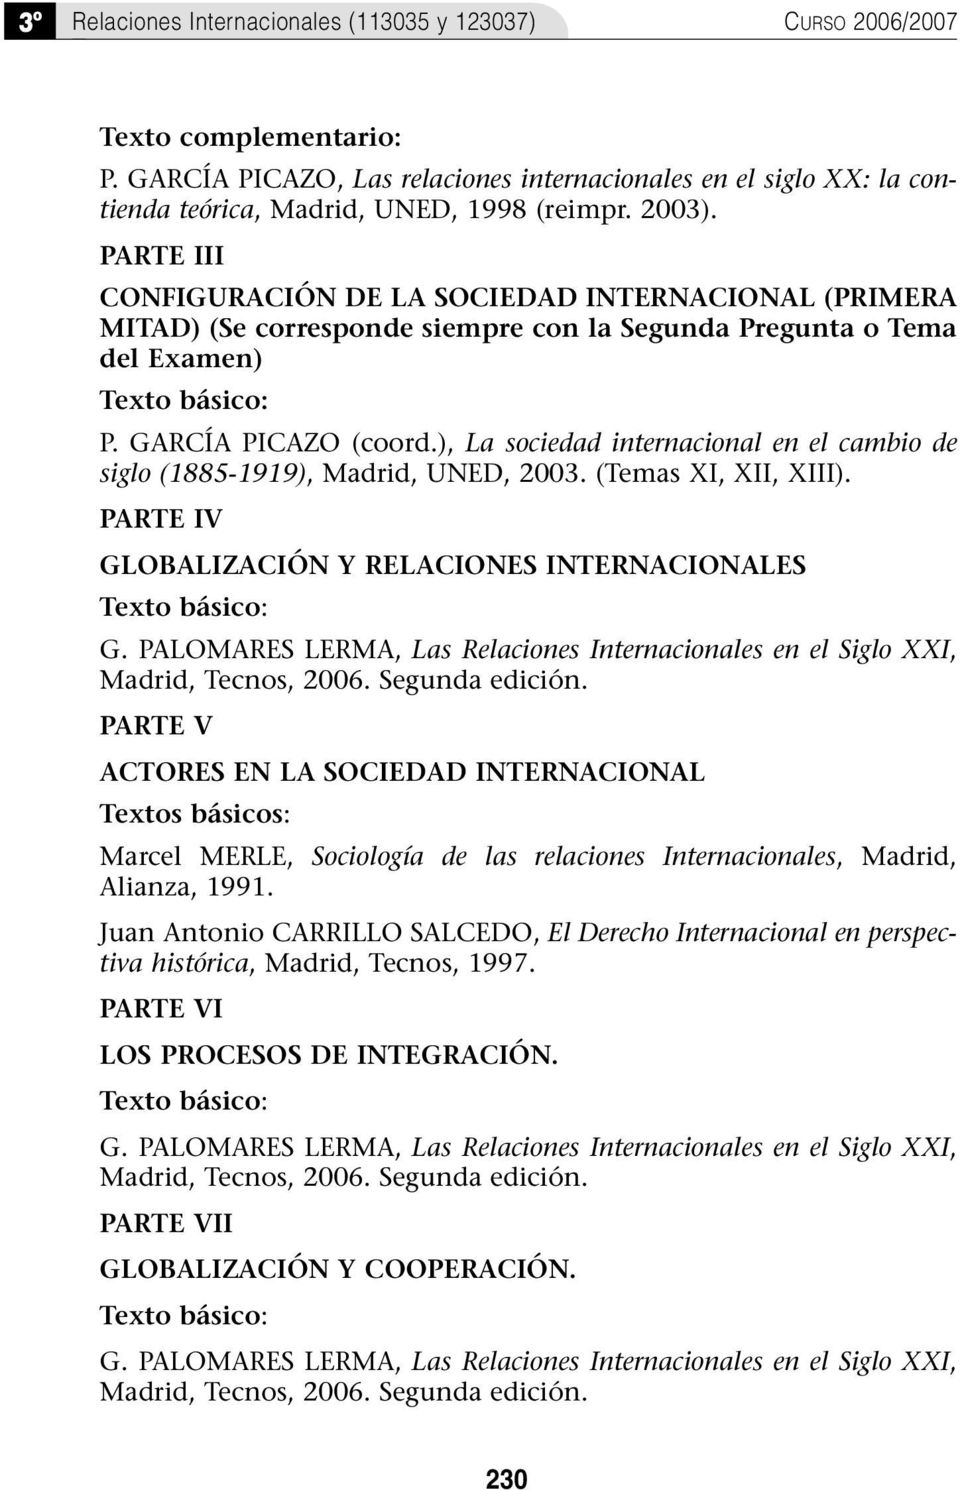 ), La sociedad internacional en el cambio de siglo (1885-1919), Madrid, UNED, 2003. (Temas XI, XII, XIII). PARTE IV GLOBALIZACIÓN Y RELACIONES INTERNACIONALES Texto básico: G.